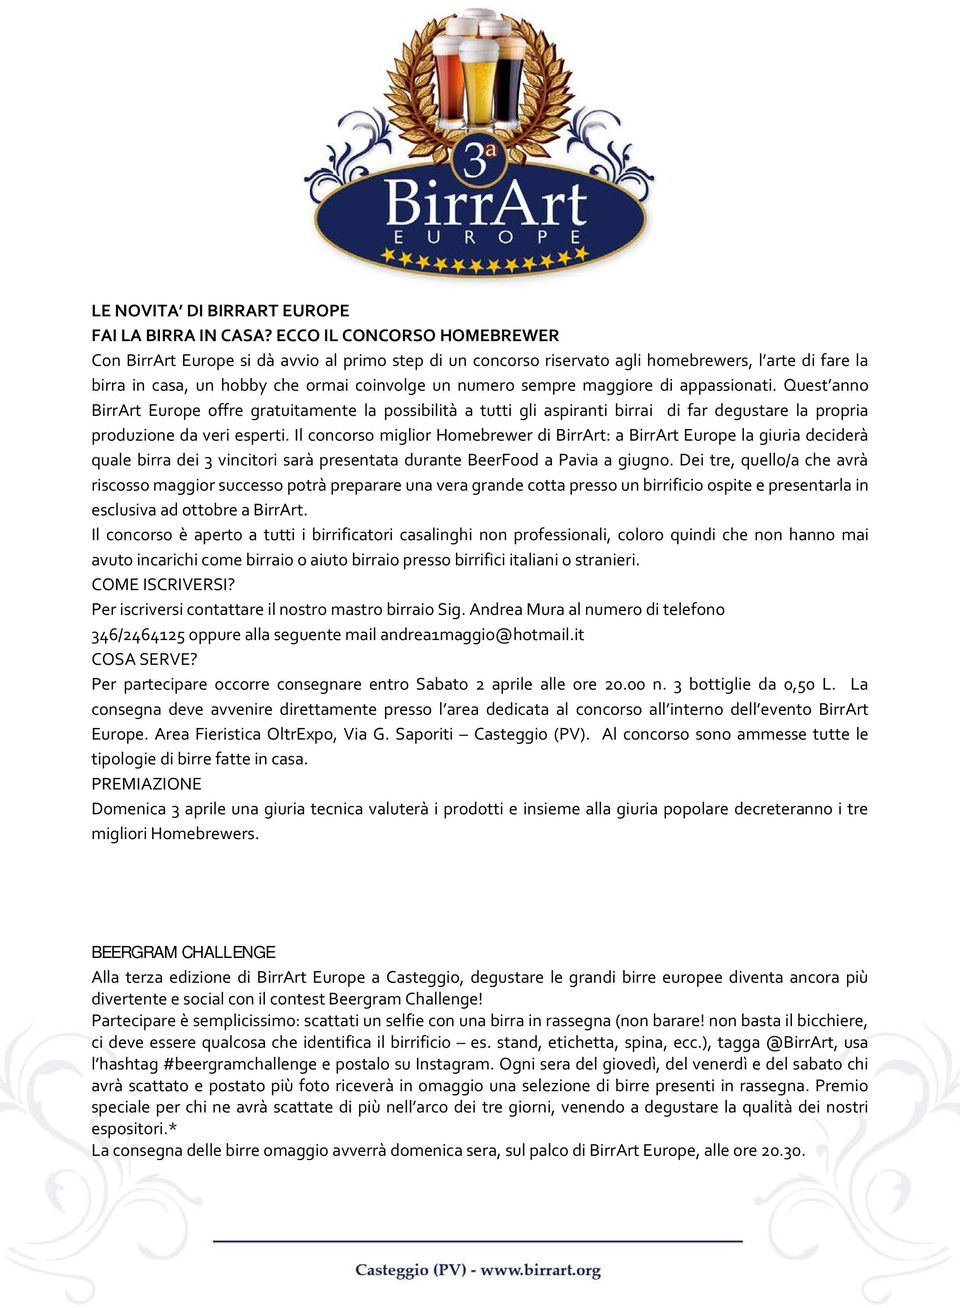 maggiore di appassionati. Quest anno BirrArt Europe offre gratuitamente la possibilità a tutti gli aspiranti birrai di far degustare la propria produzione da veri esperti.